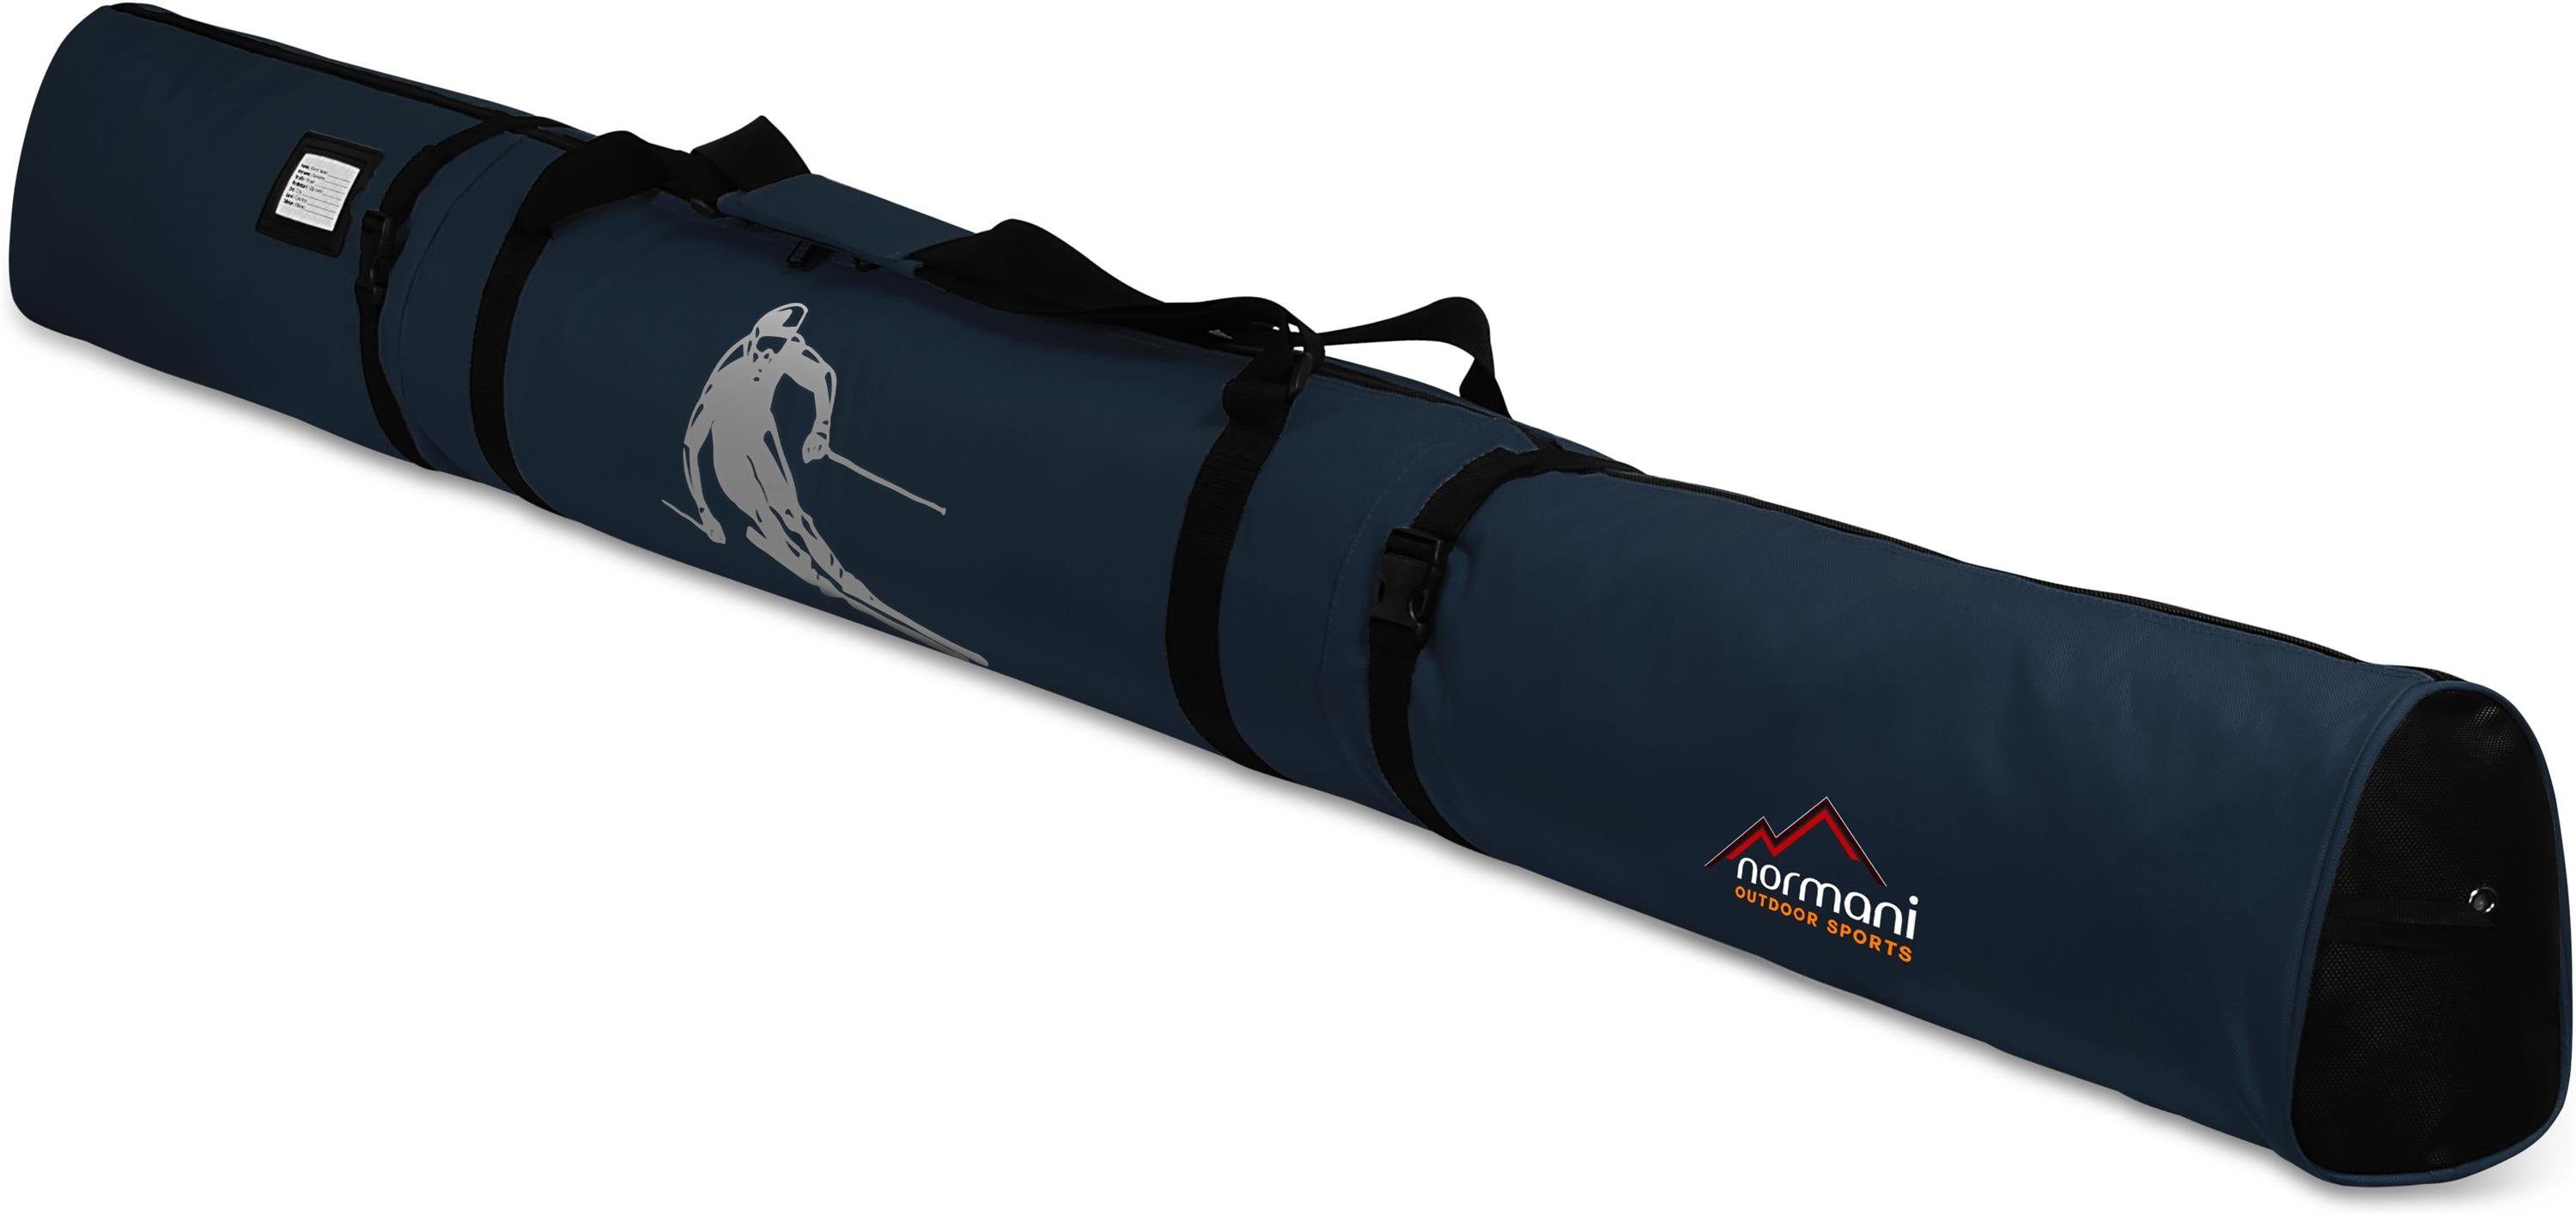 Run normani Aufbewahrungstasche 170, Transporttasche Alpine Skitasche Skier Skistöcke Sporttasche für Marine Skitasche Skihülle und